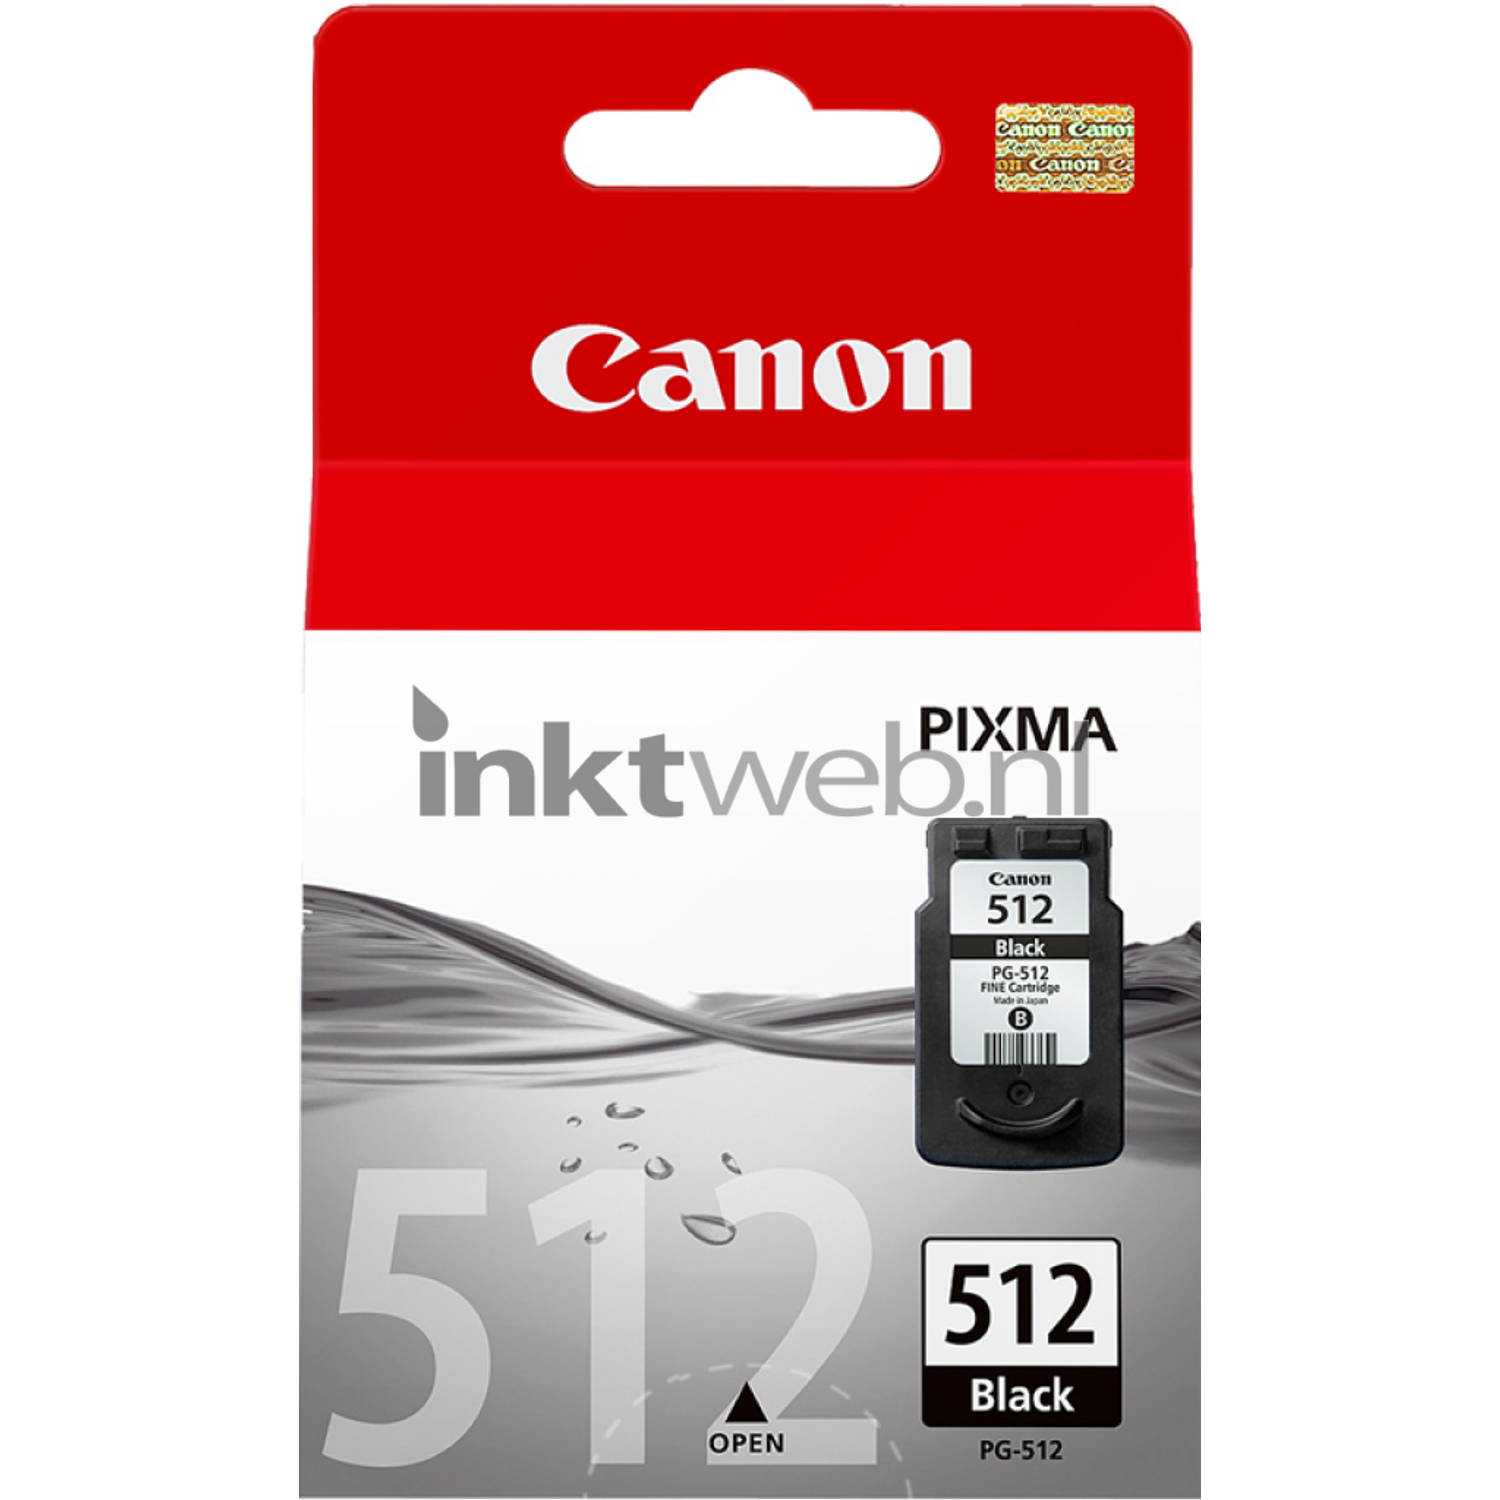 Canon PG-512 zwart cartridge